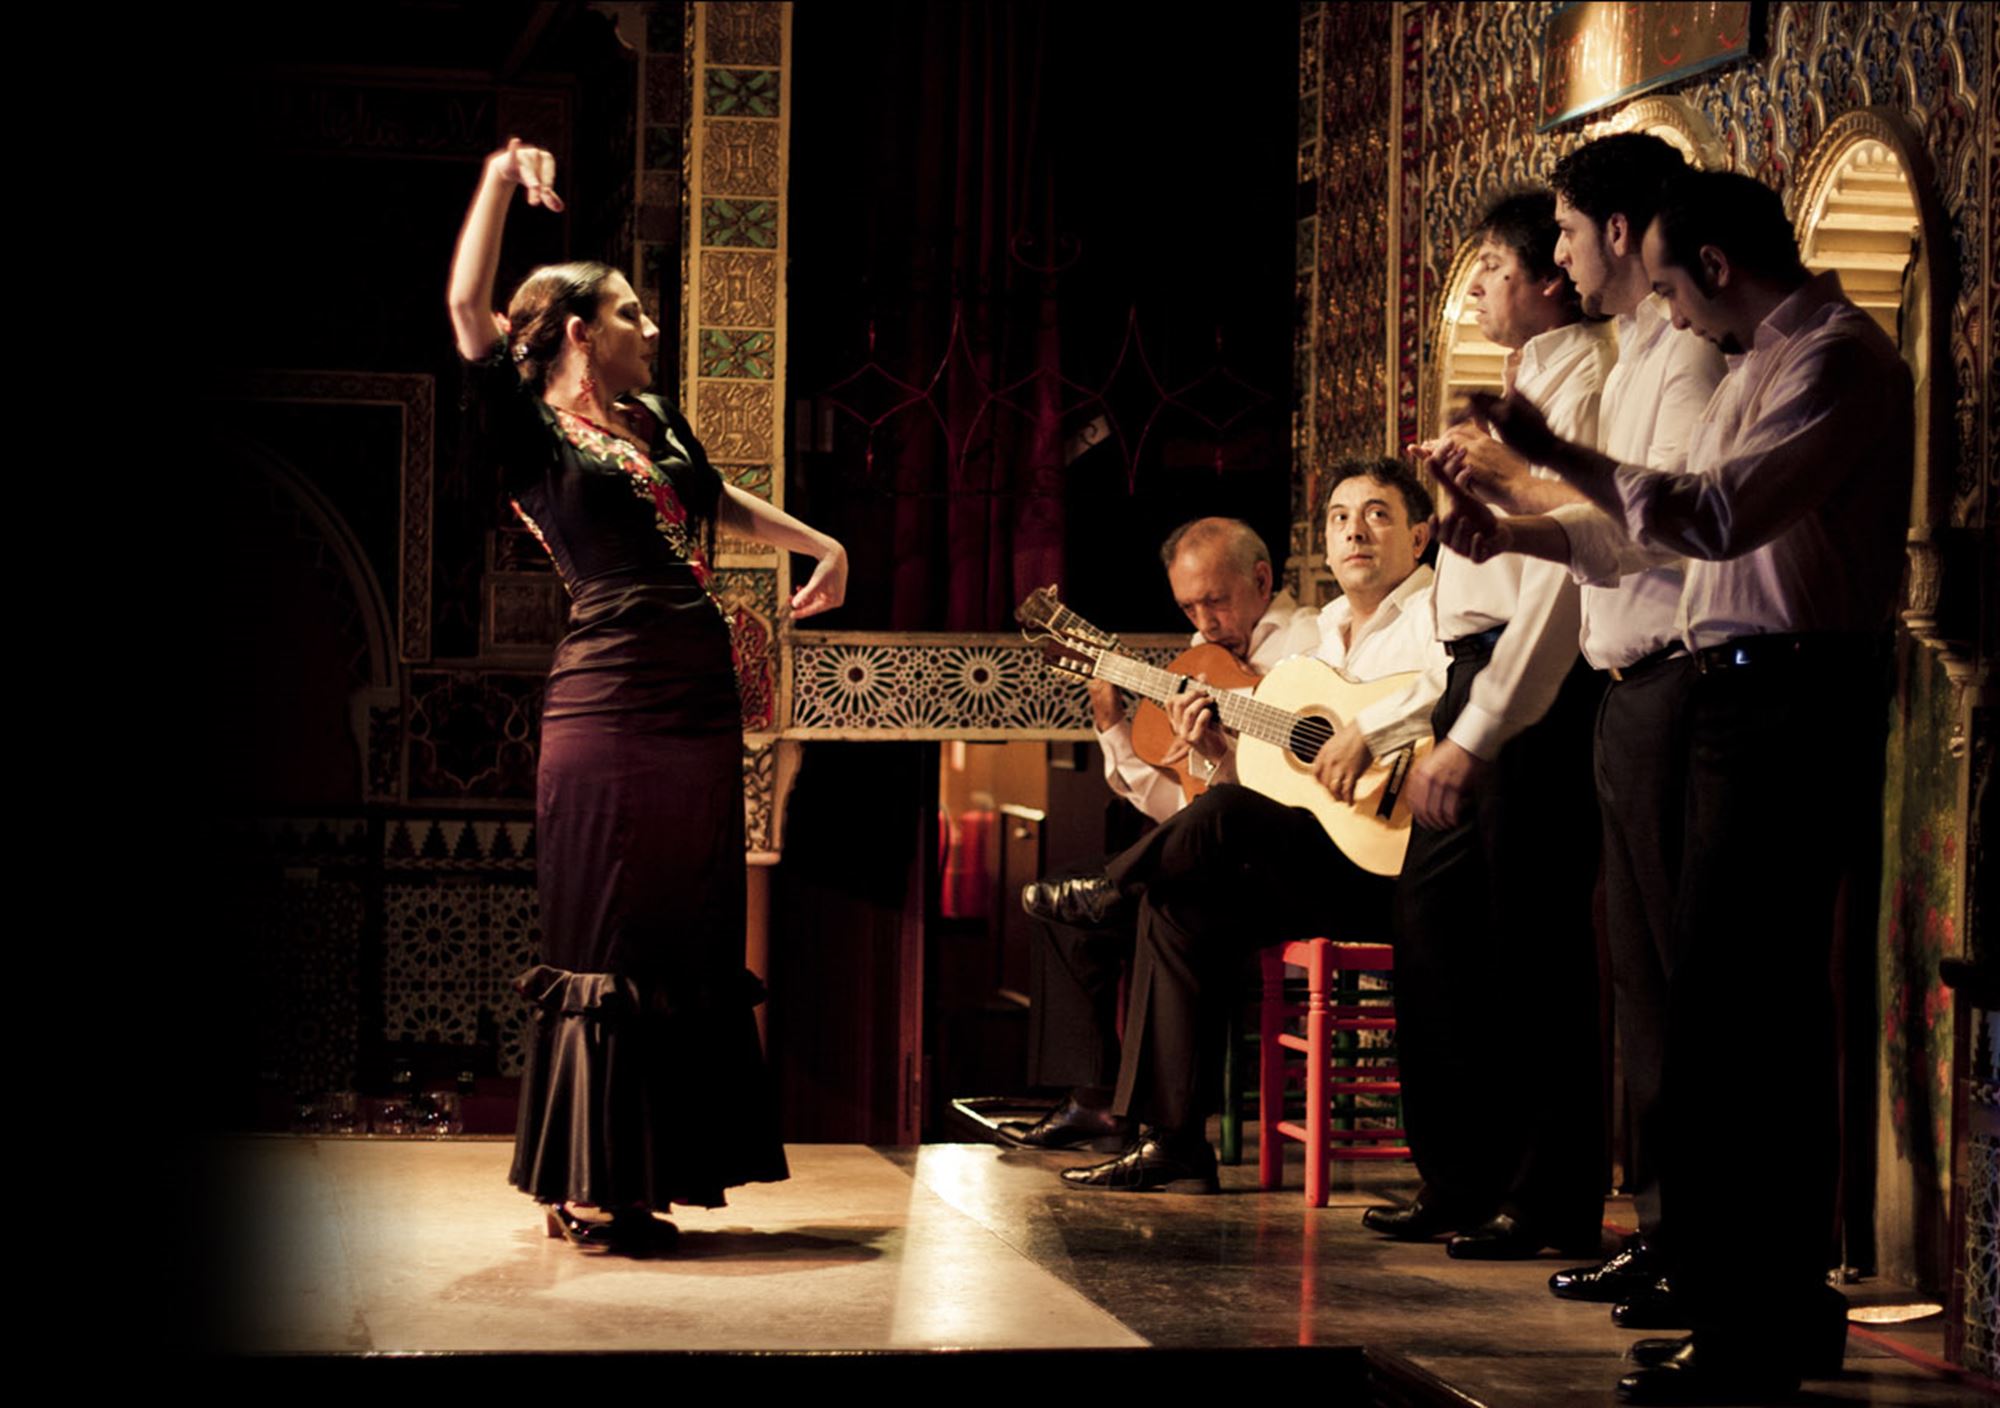 Espectáculo show Flamenco en Tablao Torres Bermejas en Madrid